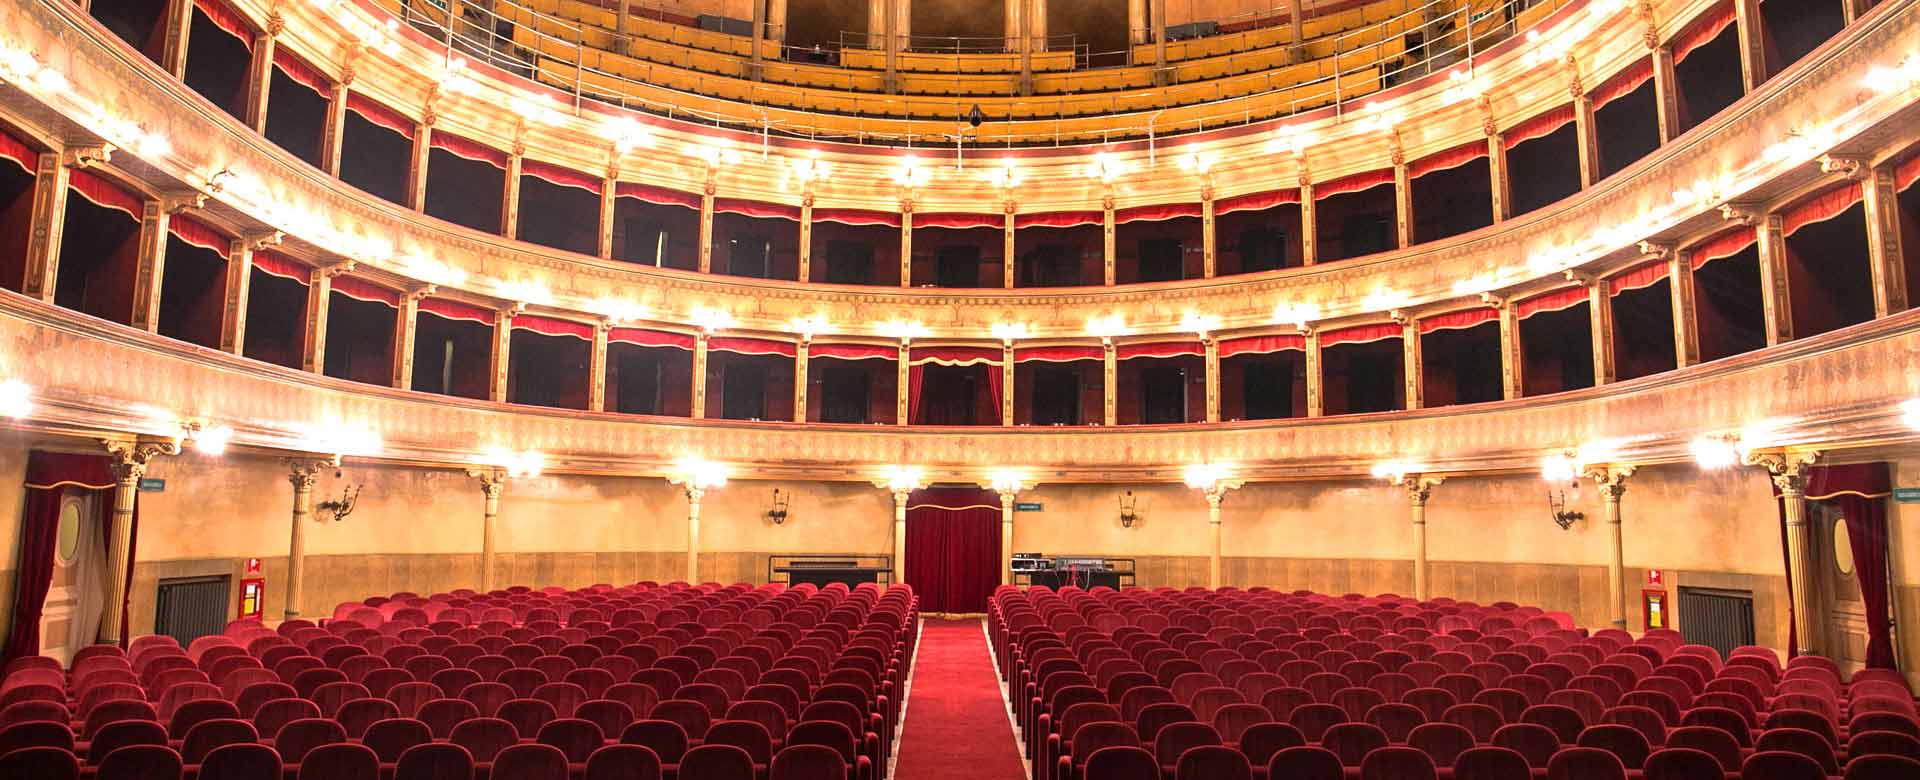 Teatro Biondo Sala Grande